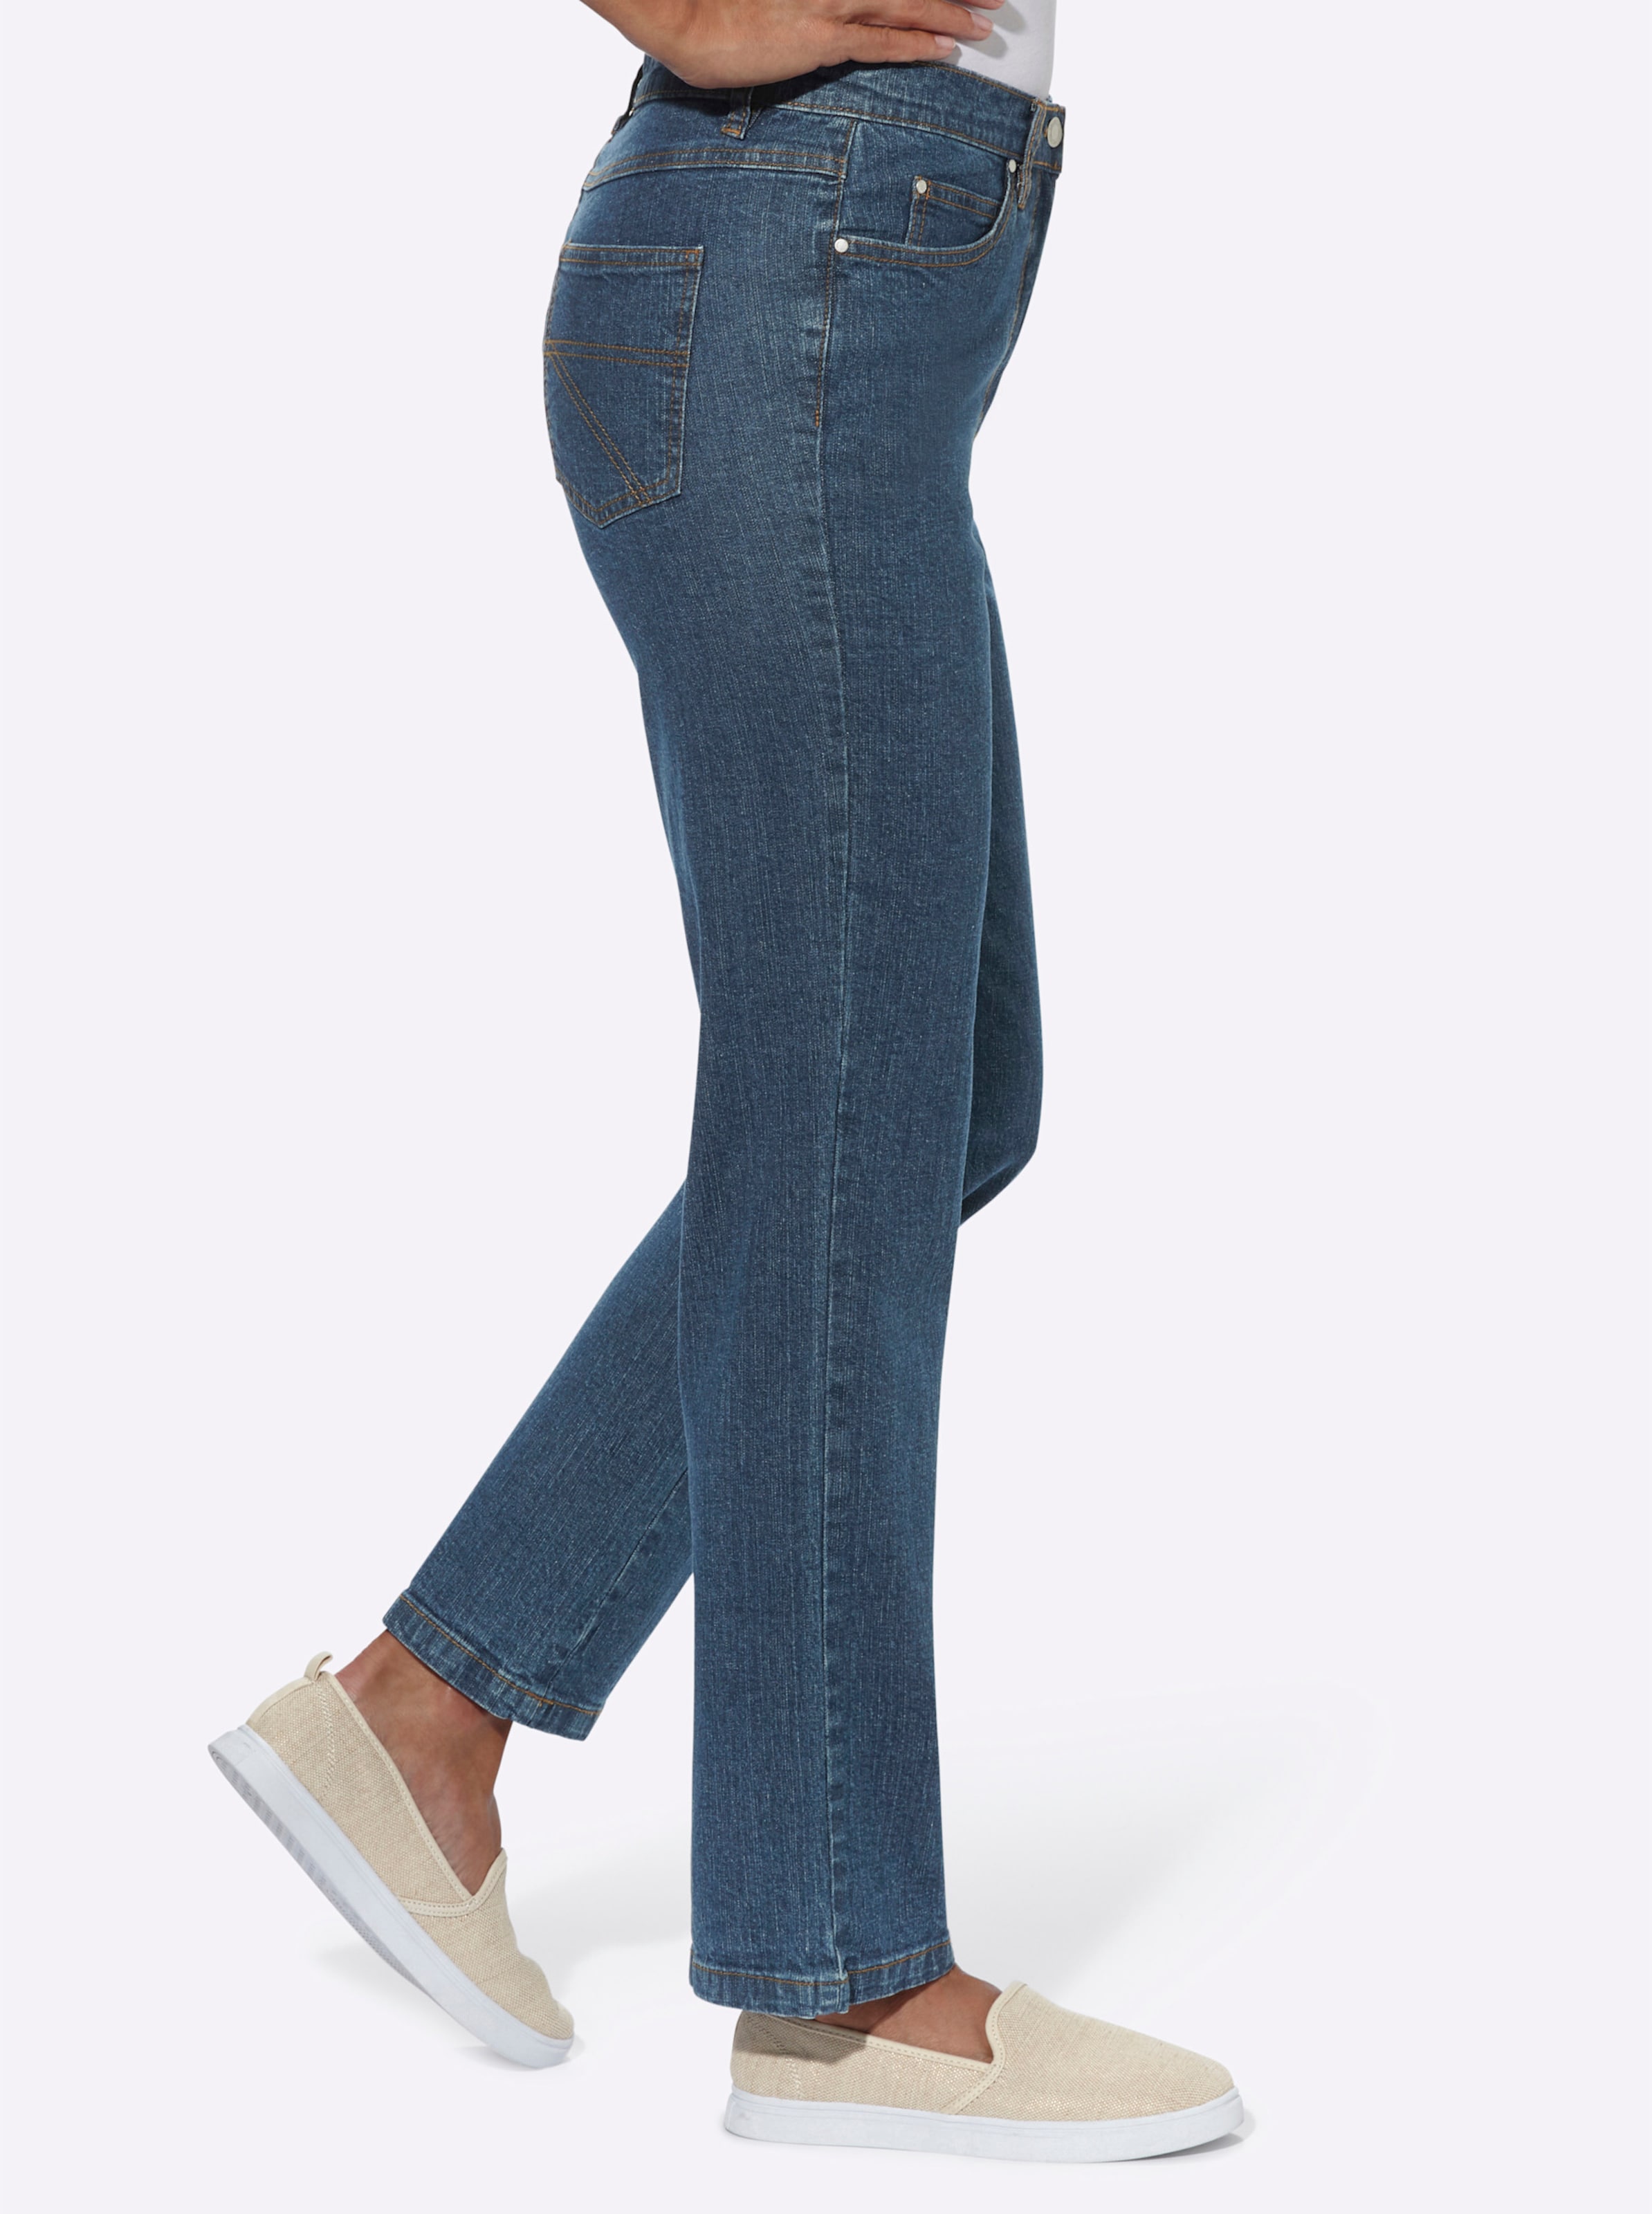 ck Jeans günstig Kaufen-5-Pocket-Jeans in blue-stone-washed von heine. 5-Pocket-Jeans in blue-stone-washed von heine <![CDATA[Sitzt super dank Baumwoll-Stretch: Klassische 5-Pocket Jeans mit stiltypischen Kontrastnähten. Rückwärtiger Sattel für die optimale Passform. Fußwei